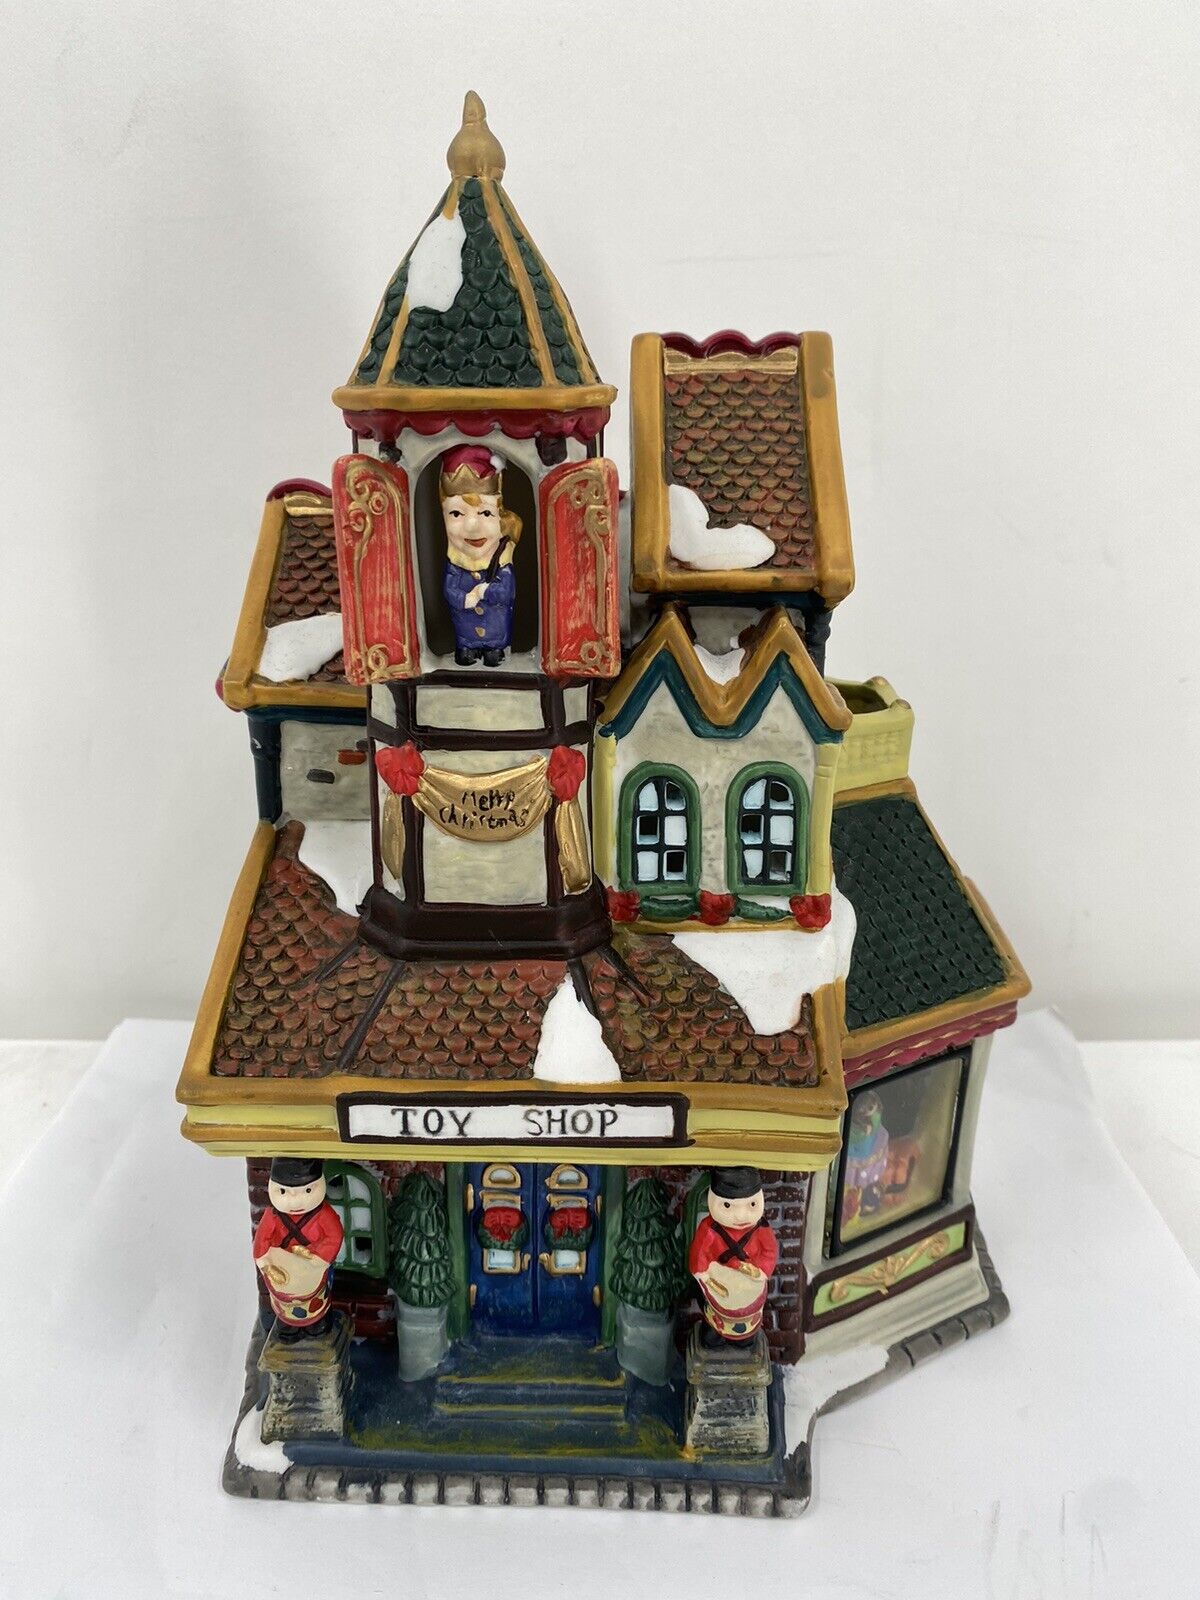 2001 Grandeur Noel Collectors Edition Porcelain Village Toy Shop house building